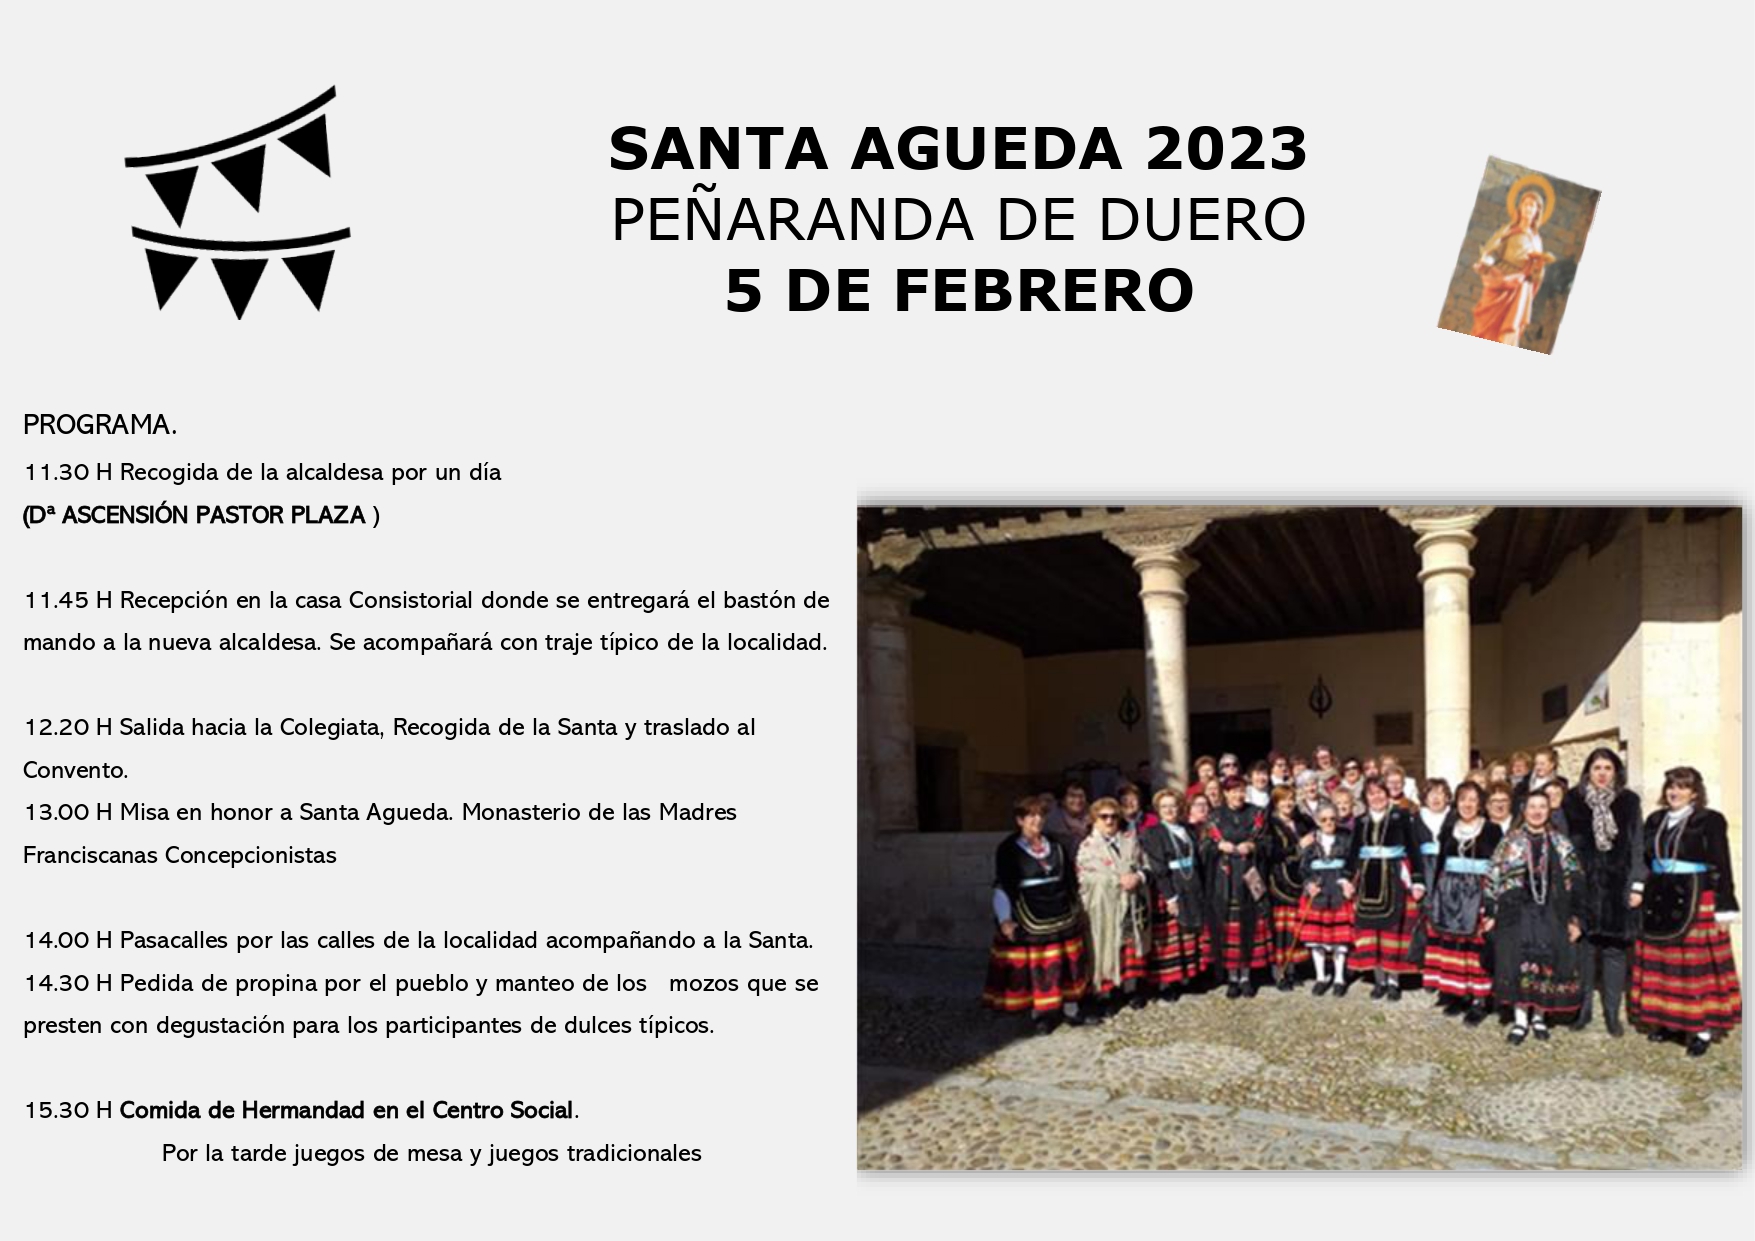 Festividad de Santa Agueda 2023